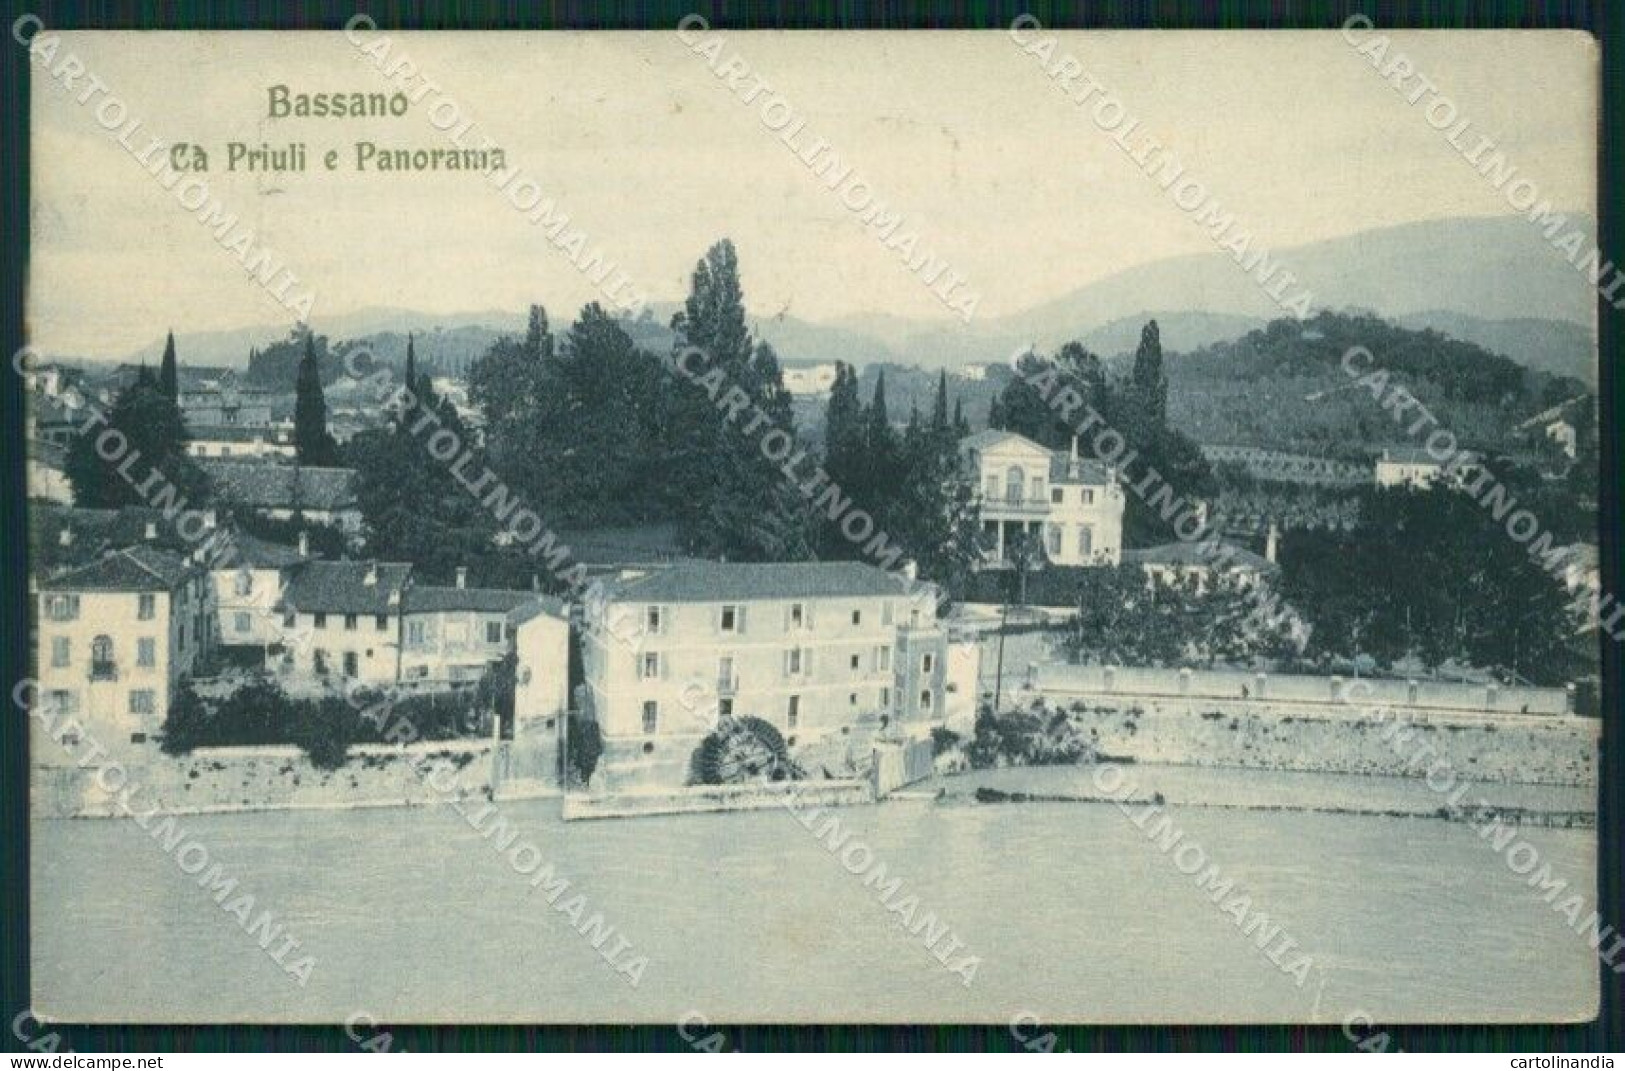 Vicenza Bassano Cà Priuli Cartolina QT2505 - Vicenza